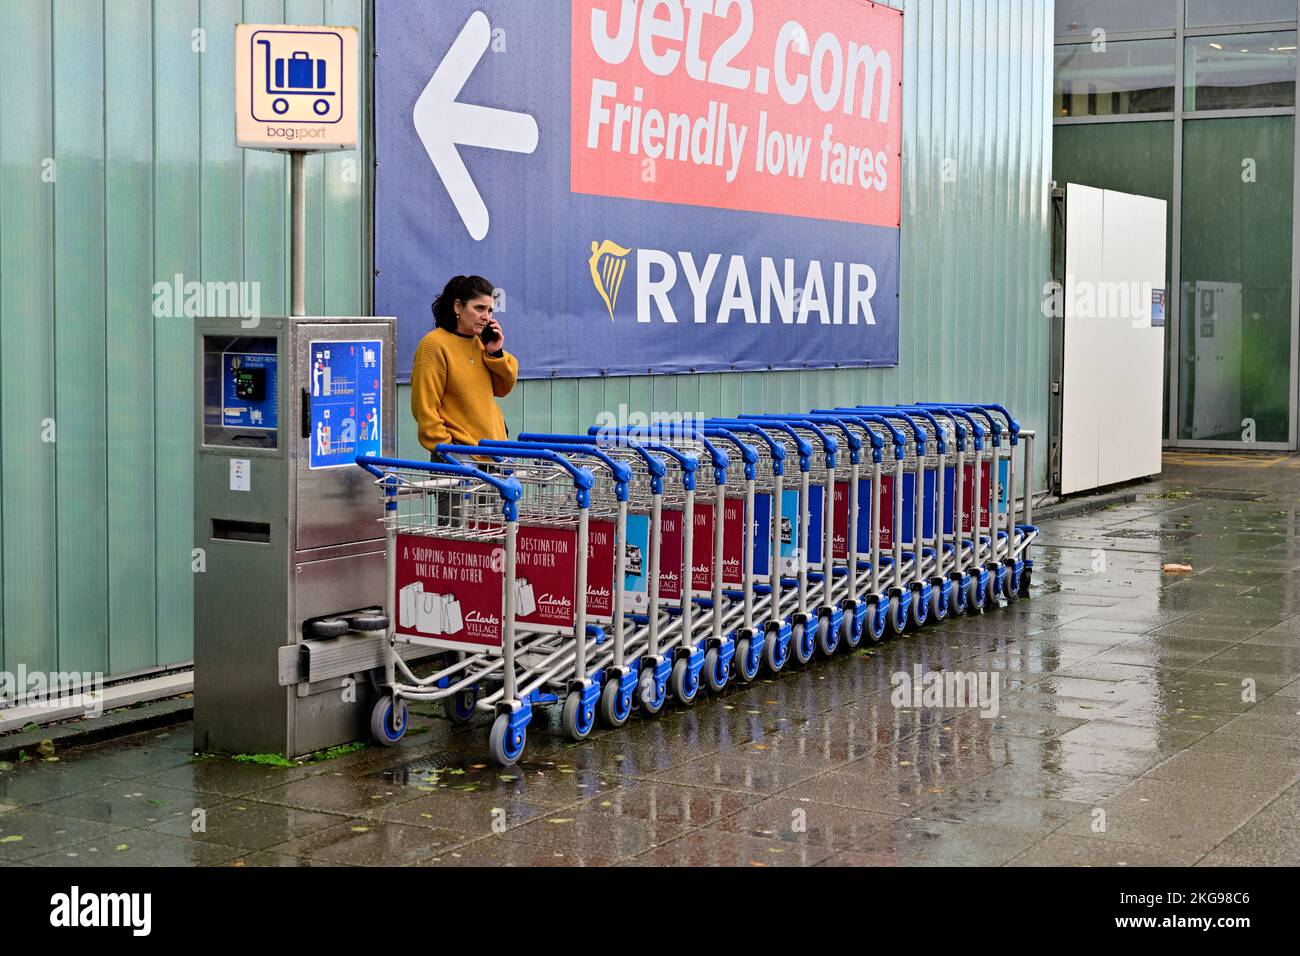 Location de chariots à bagages au terminal de l'aéroport de Bristol, paiement en pièces nécessaires pour libérer les chariots à utiliser, Royaume-Uni Banque D'Images